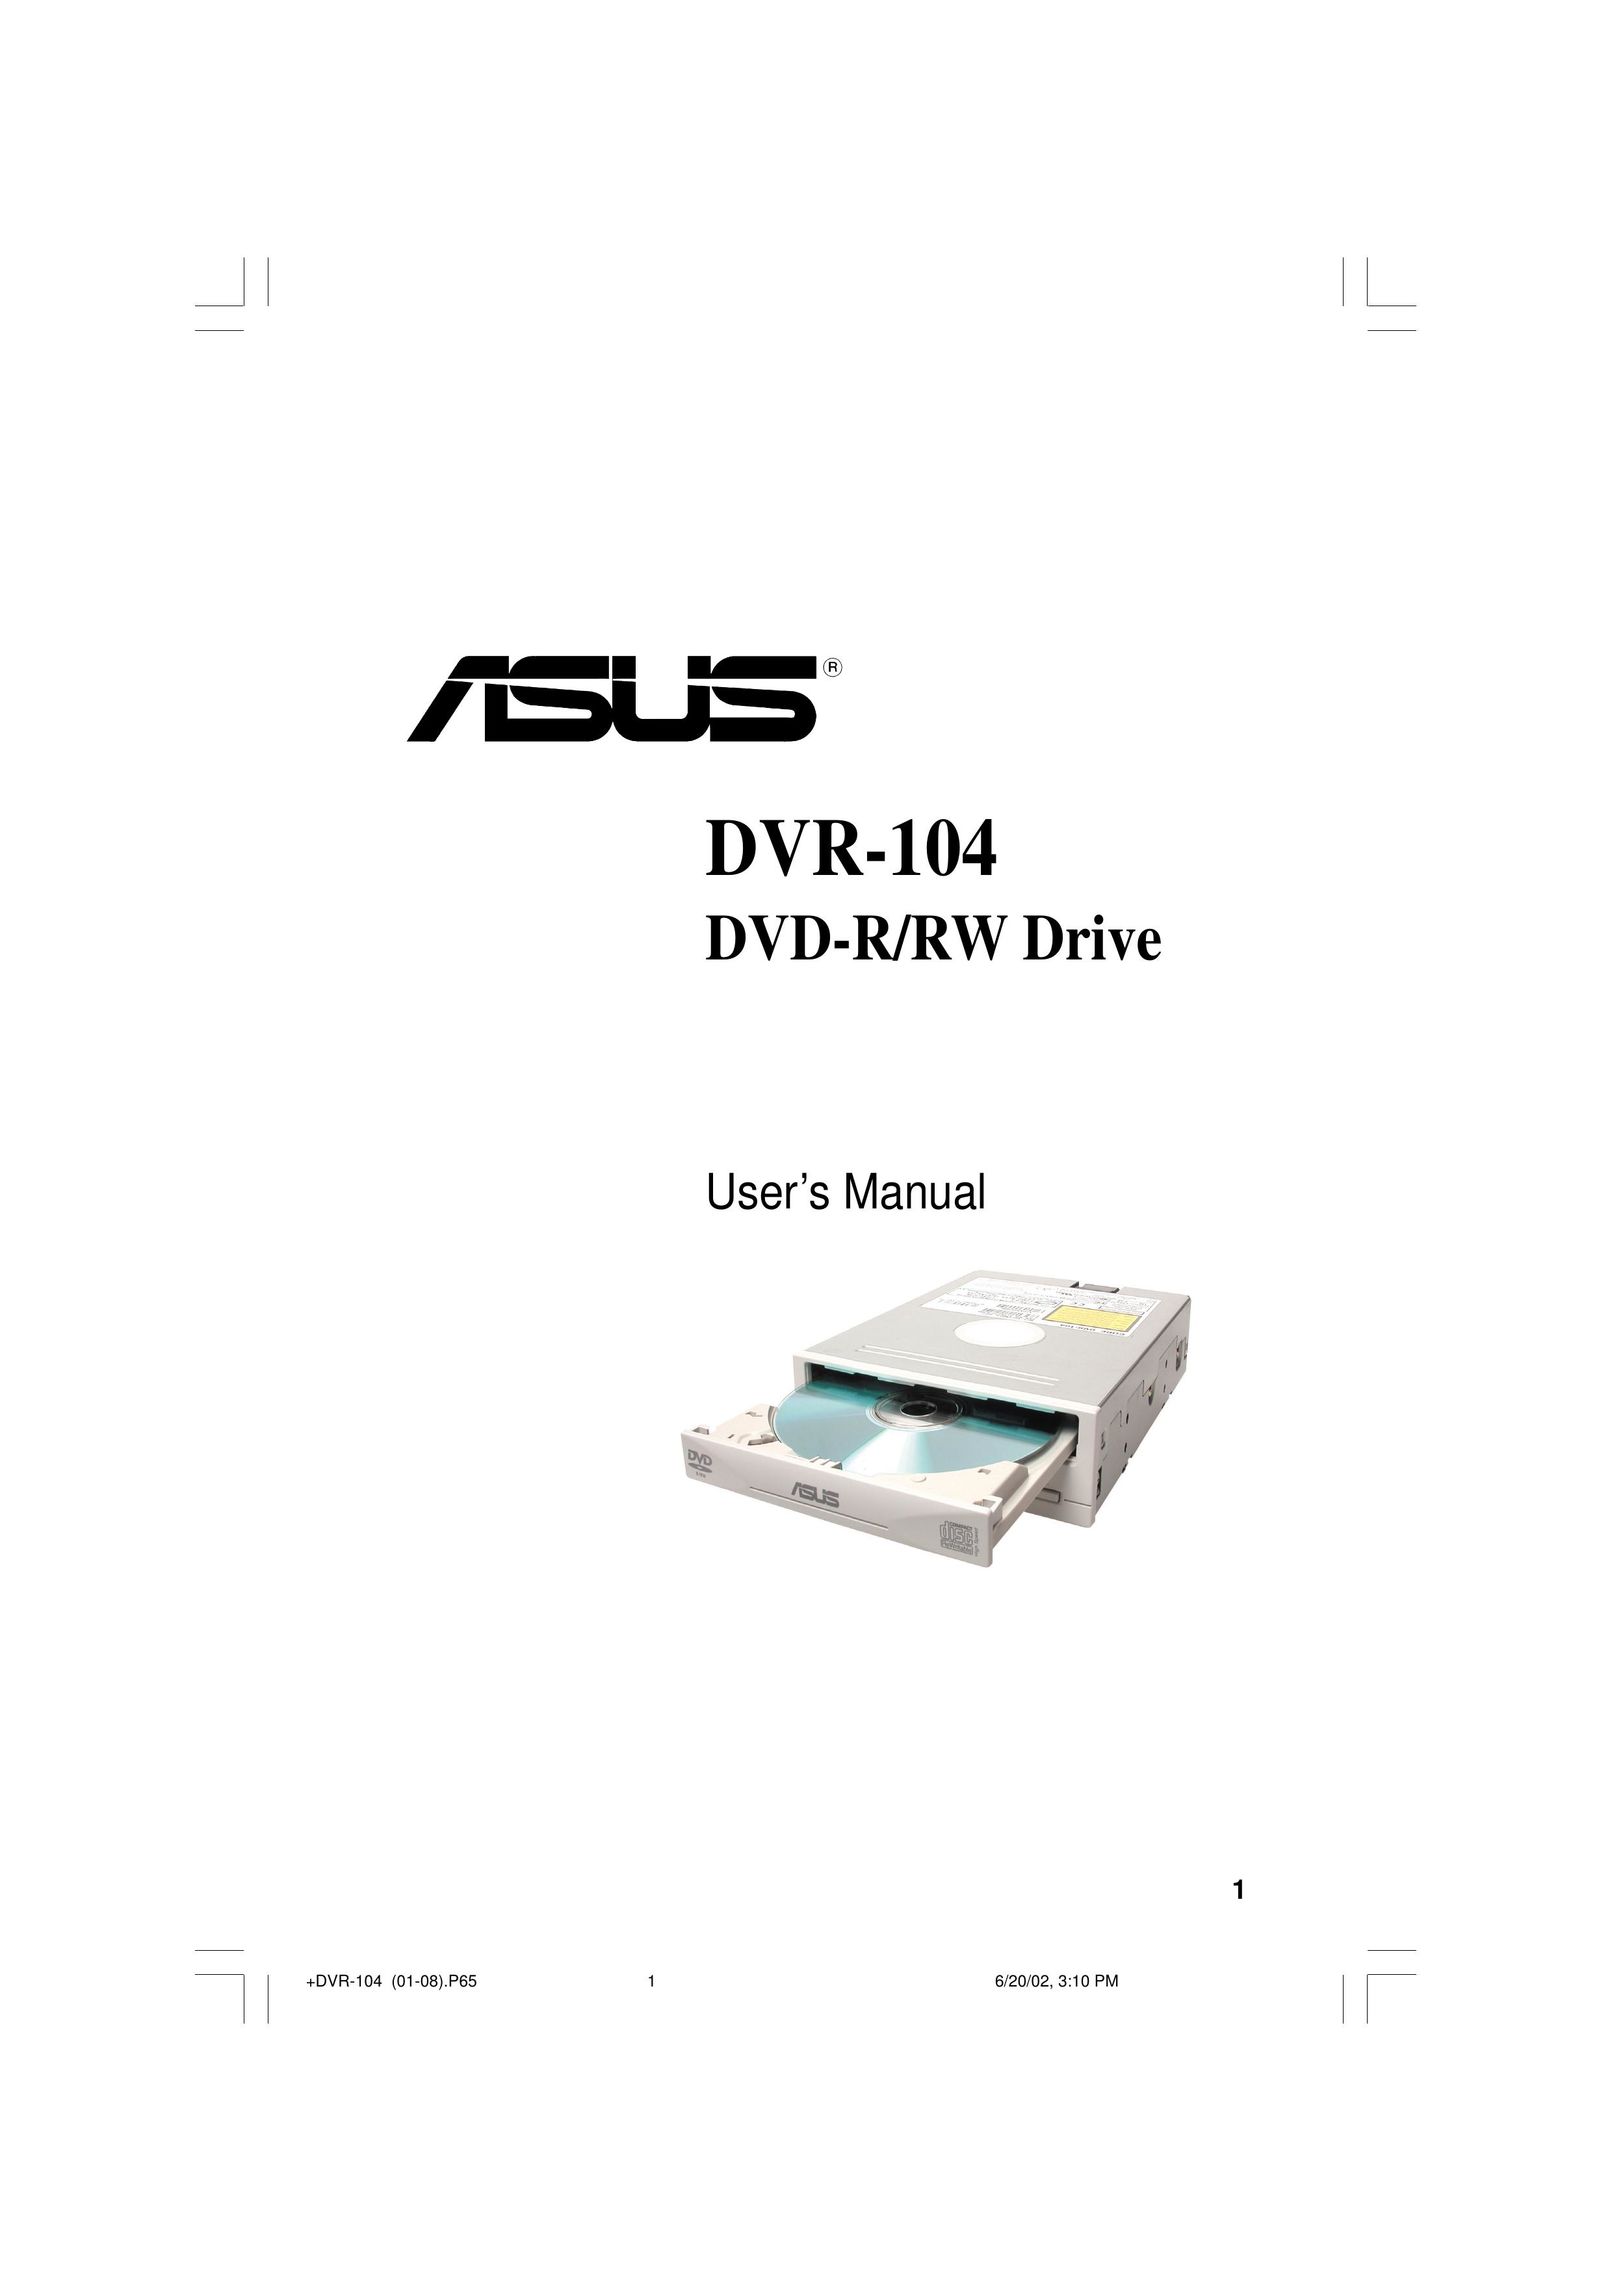 Asus DVR-104 Network Card User Manual